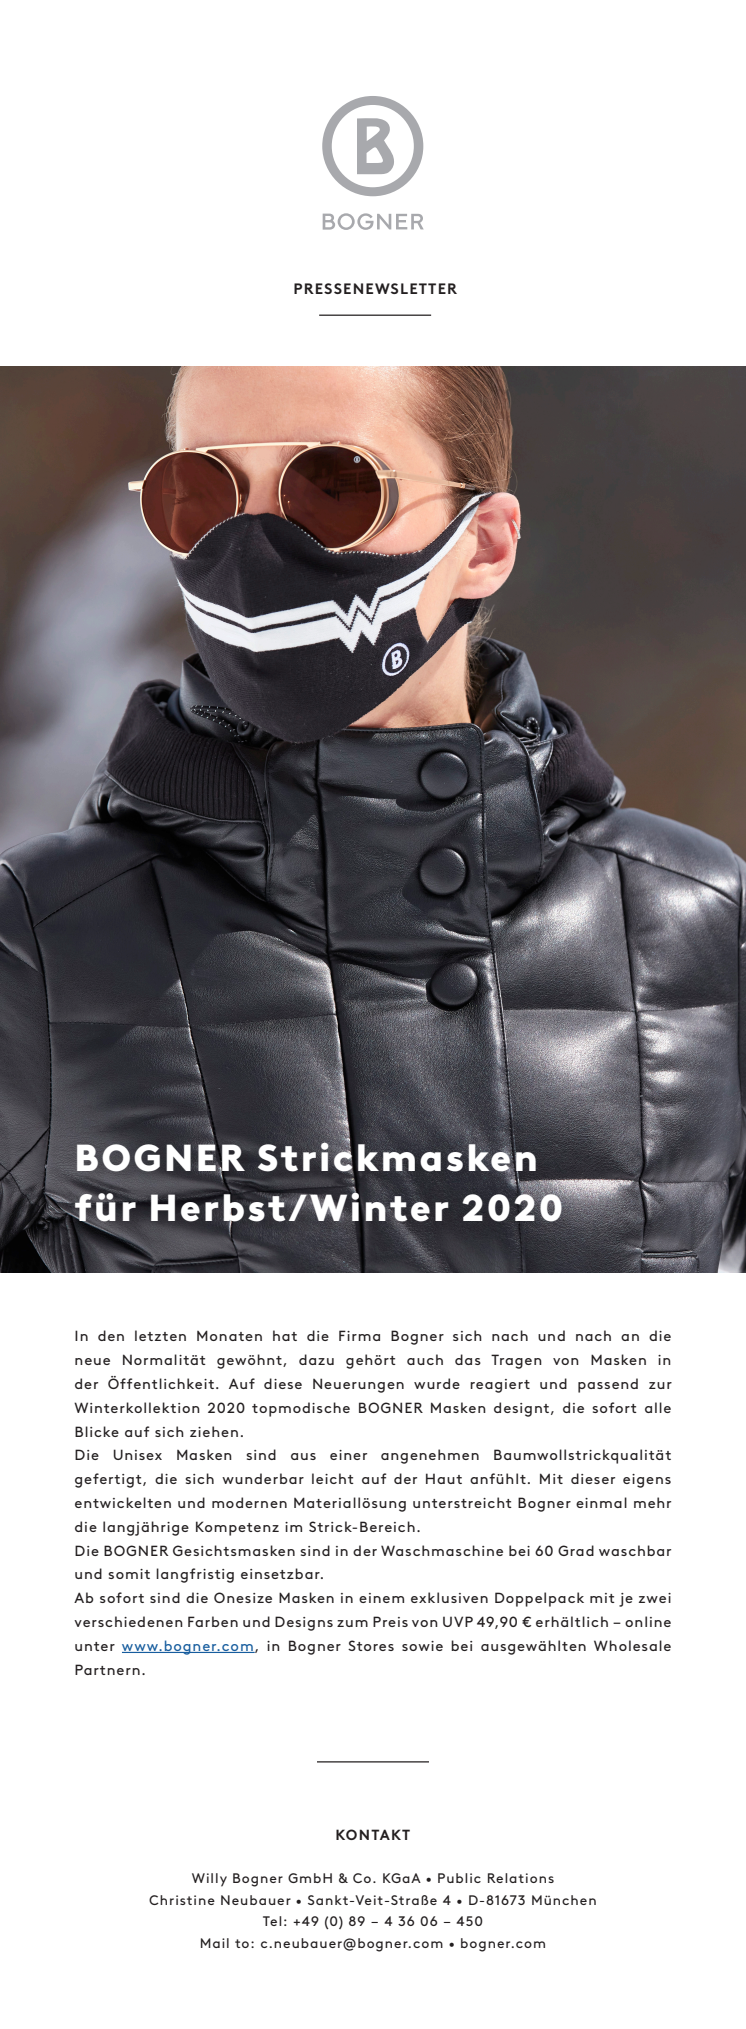 BOGNER Face Masks for Fall/Winter 2020